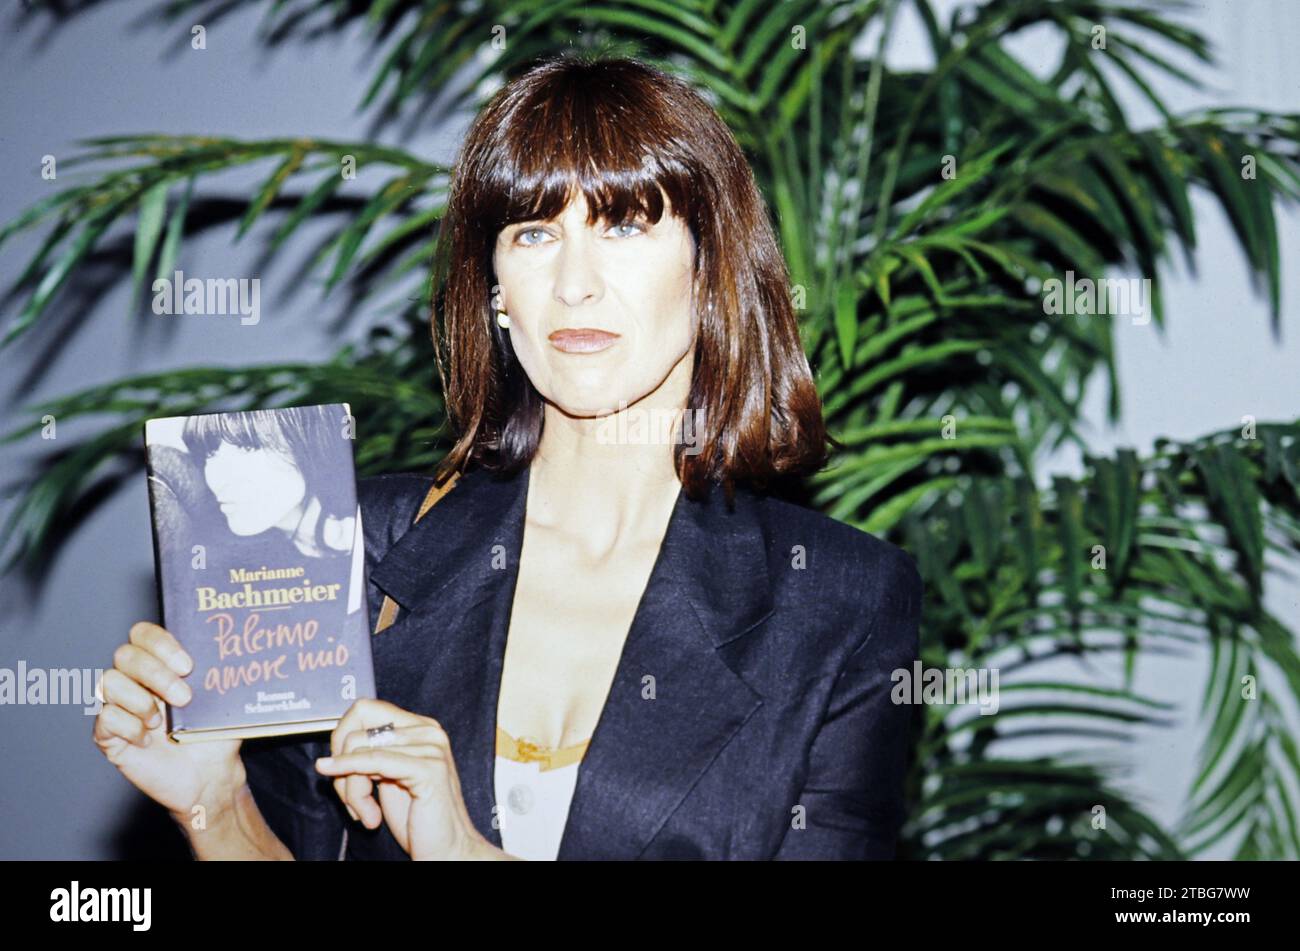 Marianne Bachmeier, die im März 1981 den Mörder ihrer Tochter im Gerichtssaal erschoss, mit ihrer Autobiografie 'Palermo, amore mio', Deutschland 1994. Stock Photo